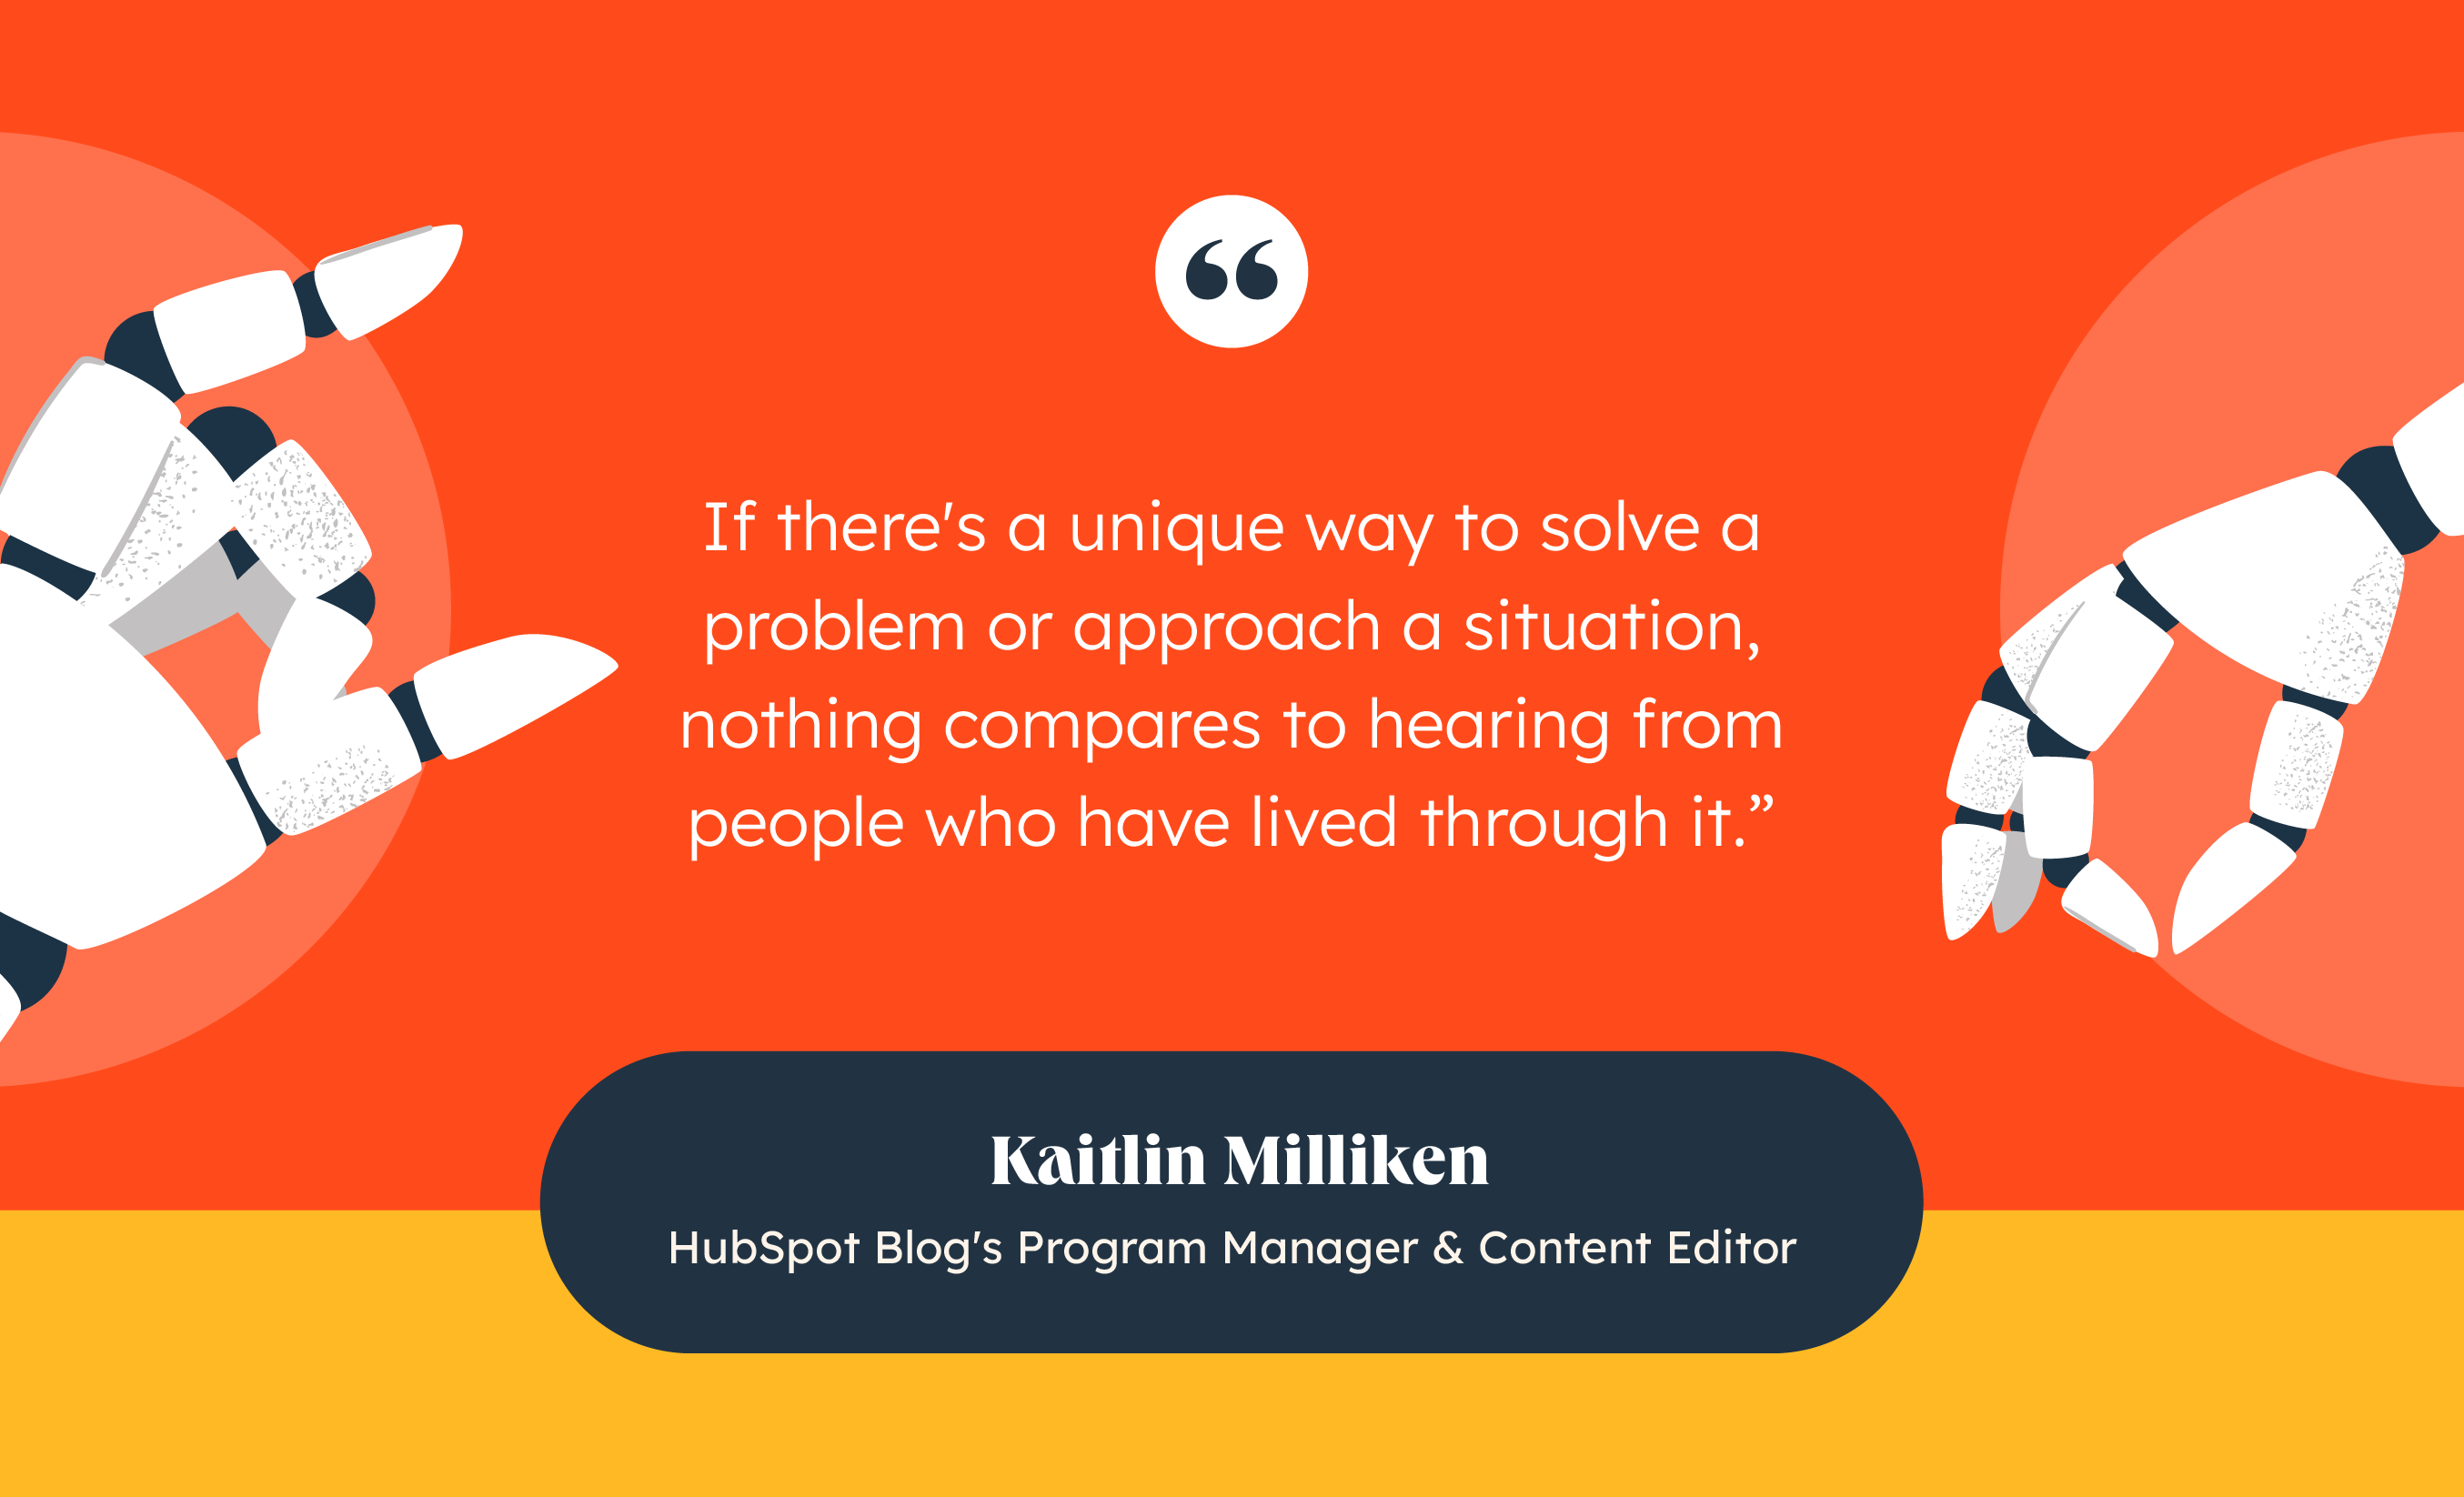 Kaitlin Milliken: Was it Written By AI?